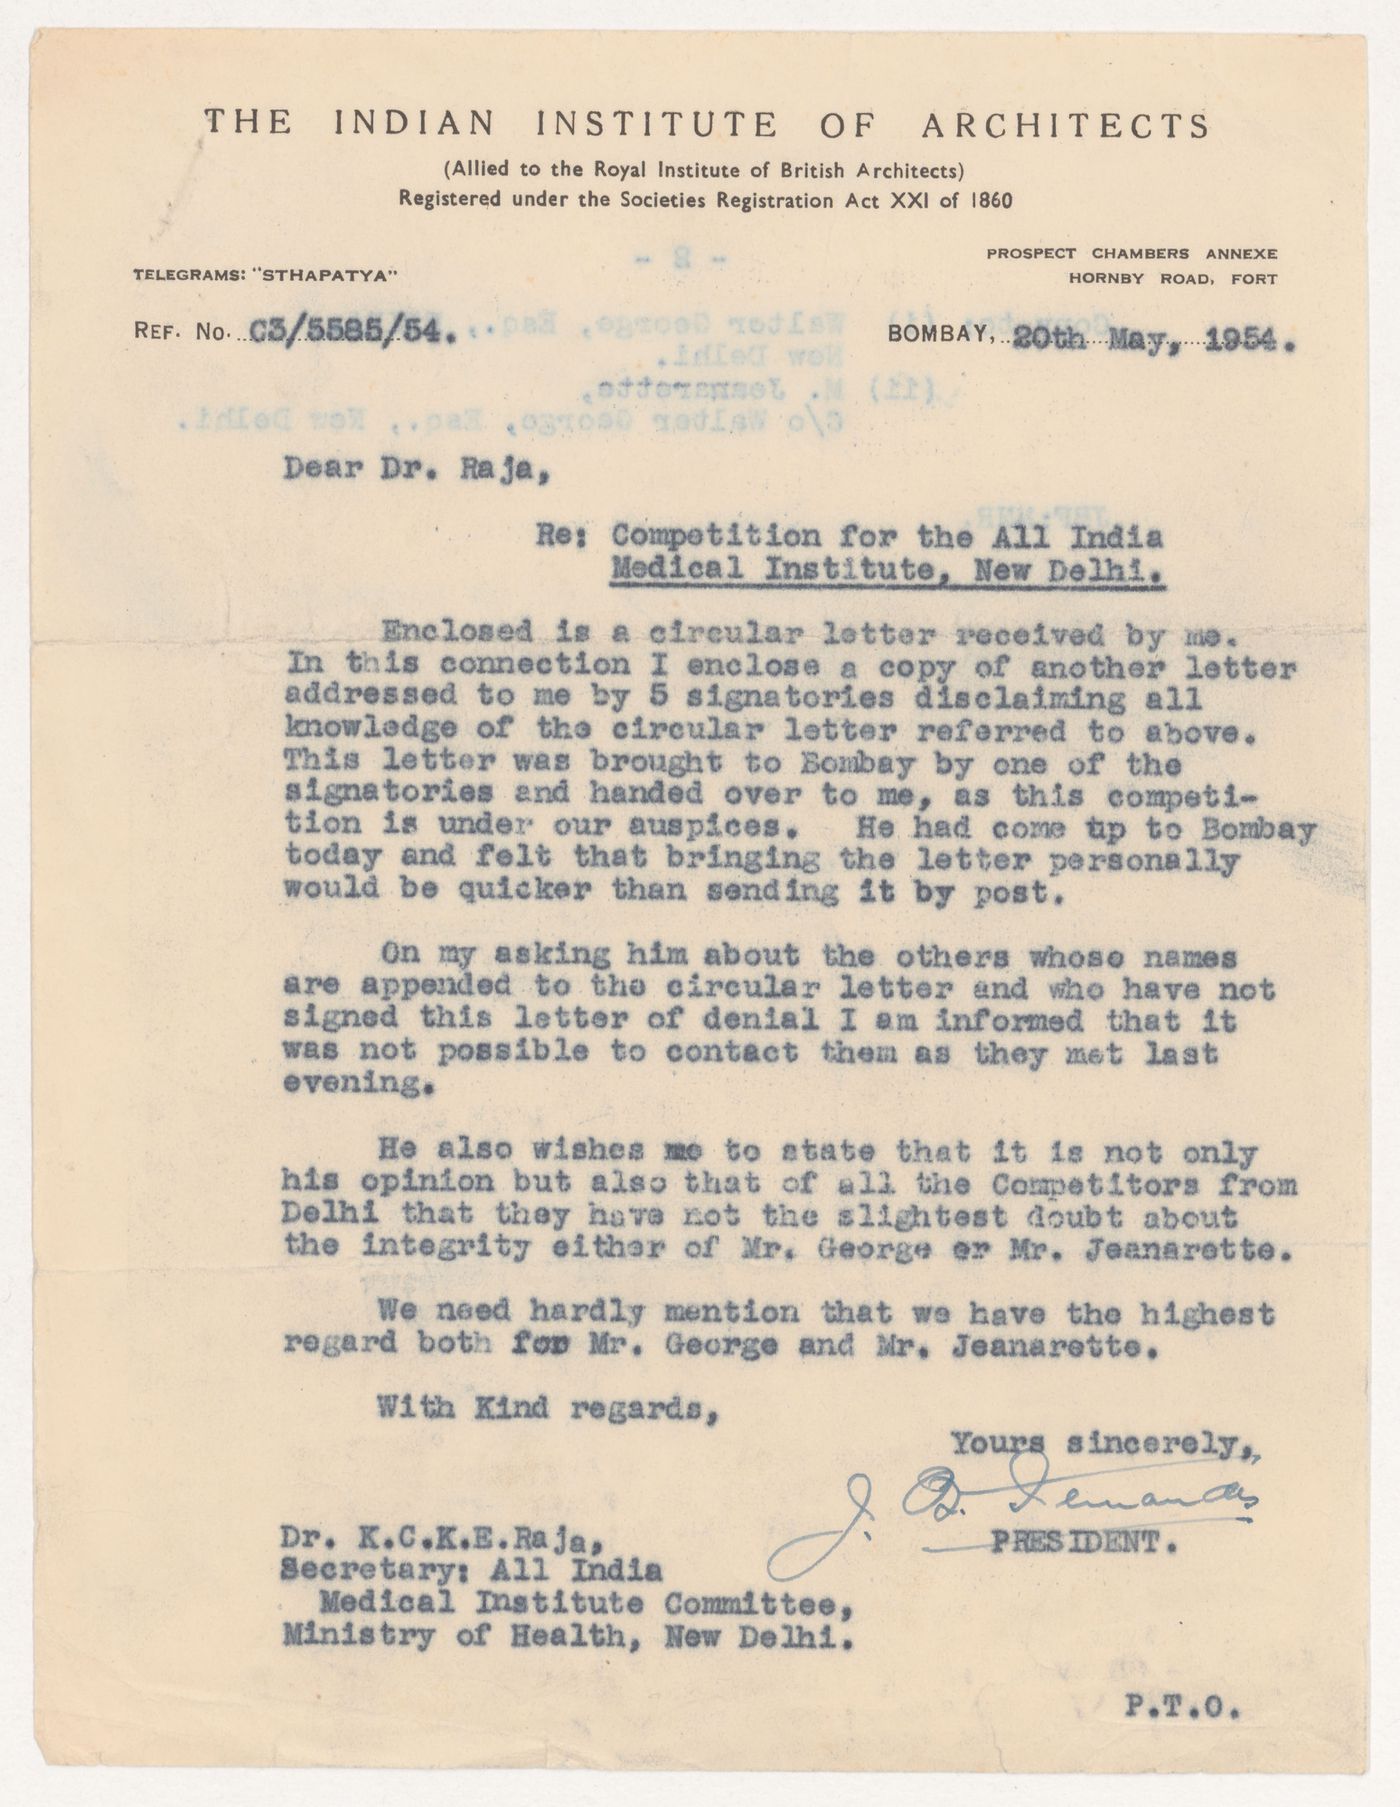 Letter from J.B. Fernandes to K.C.K.E. Raja